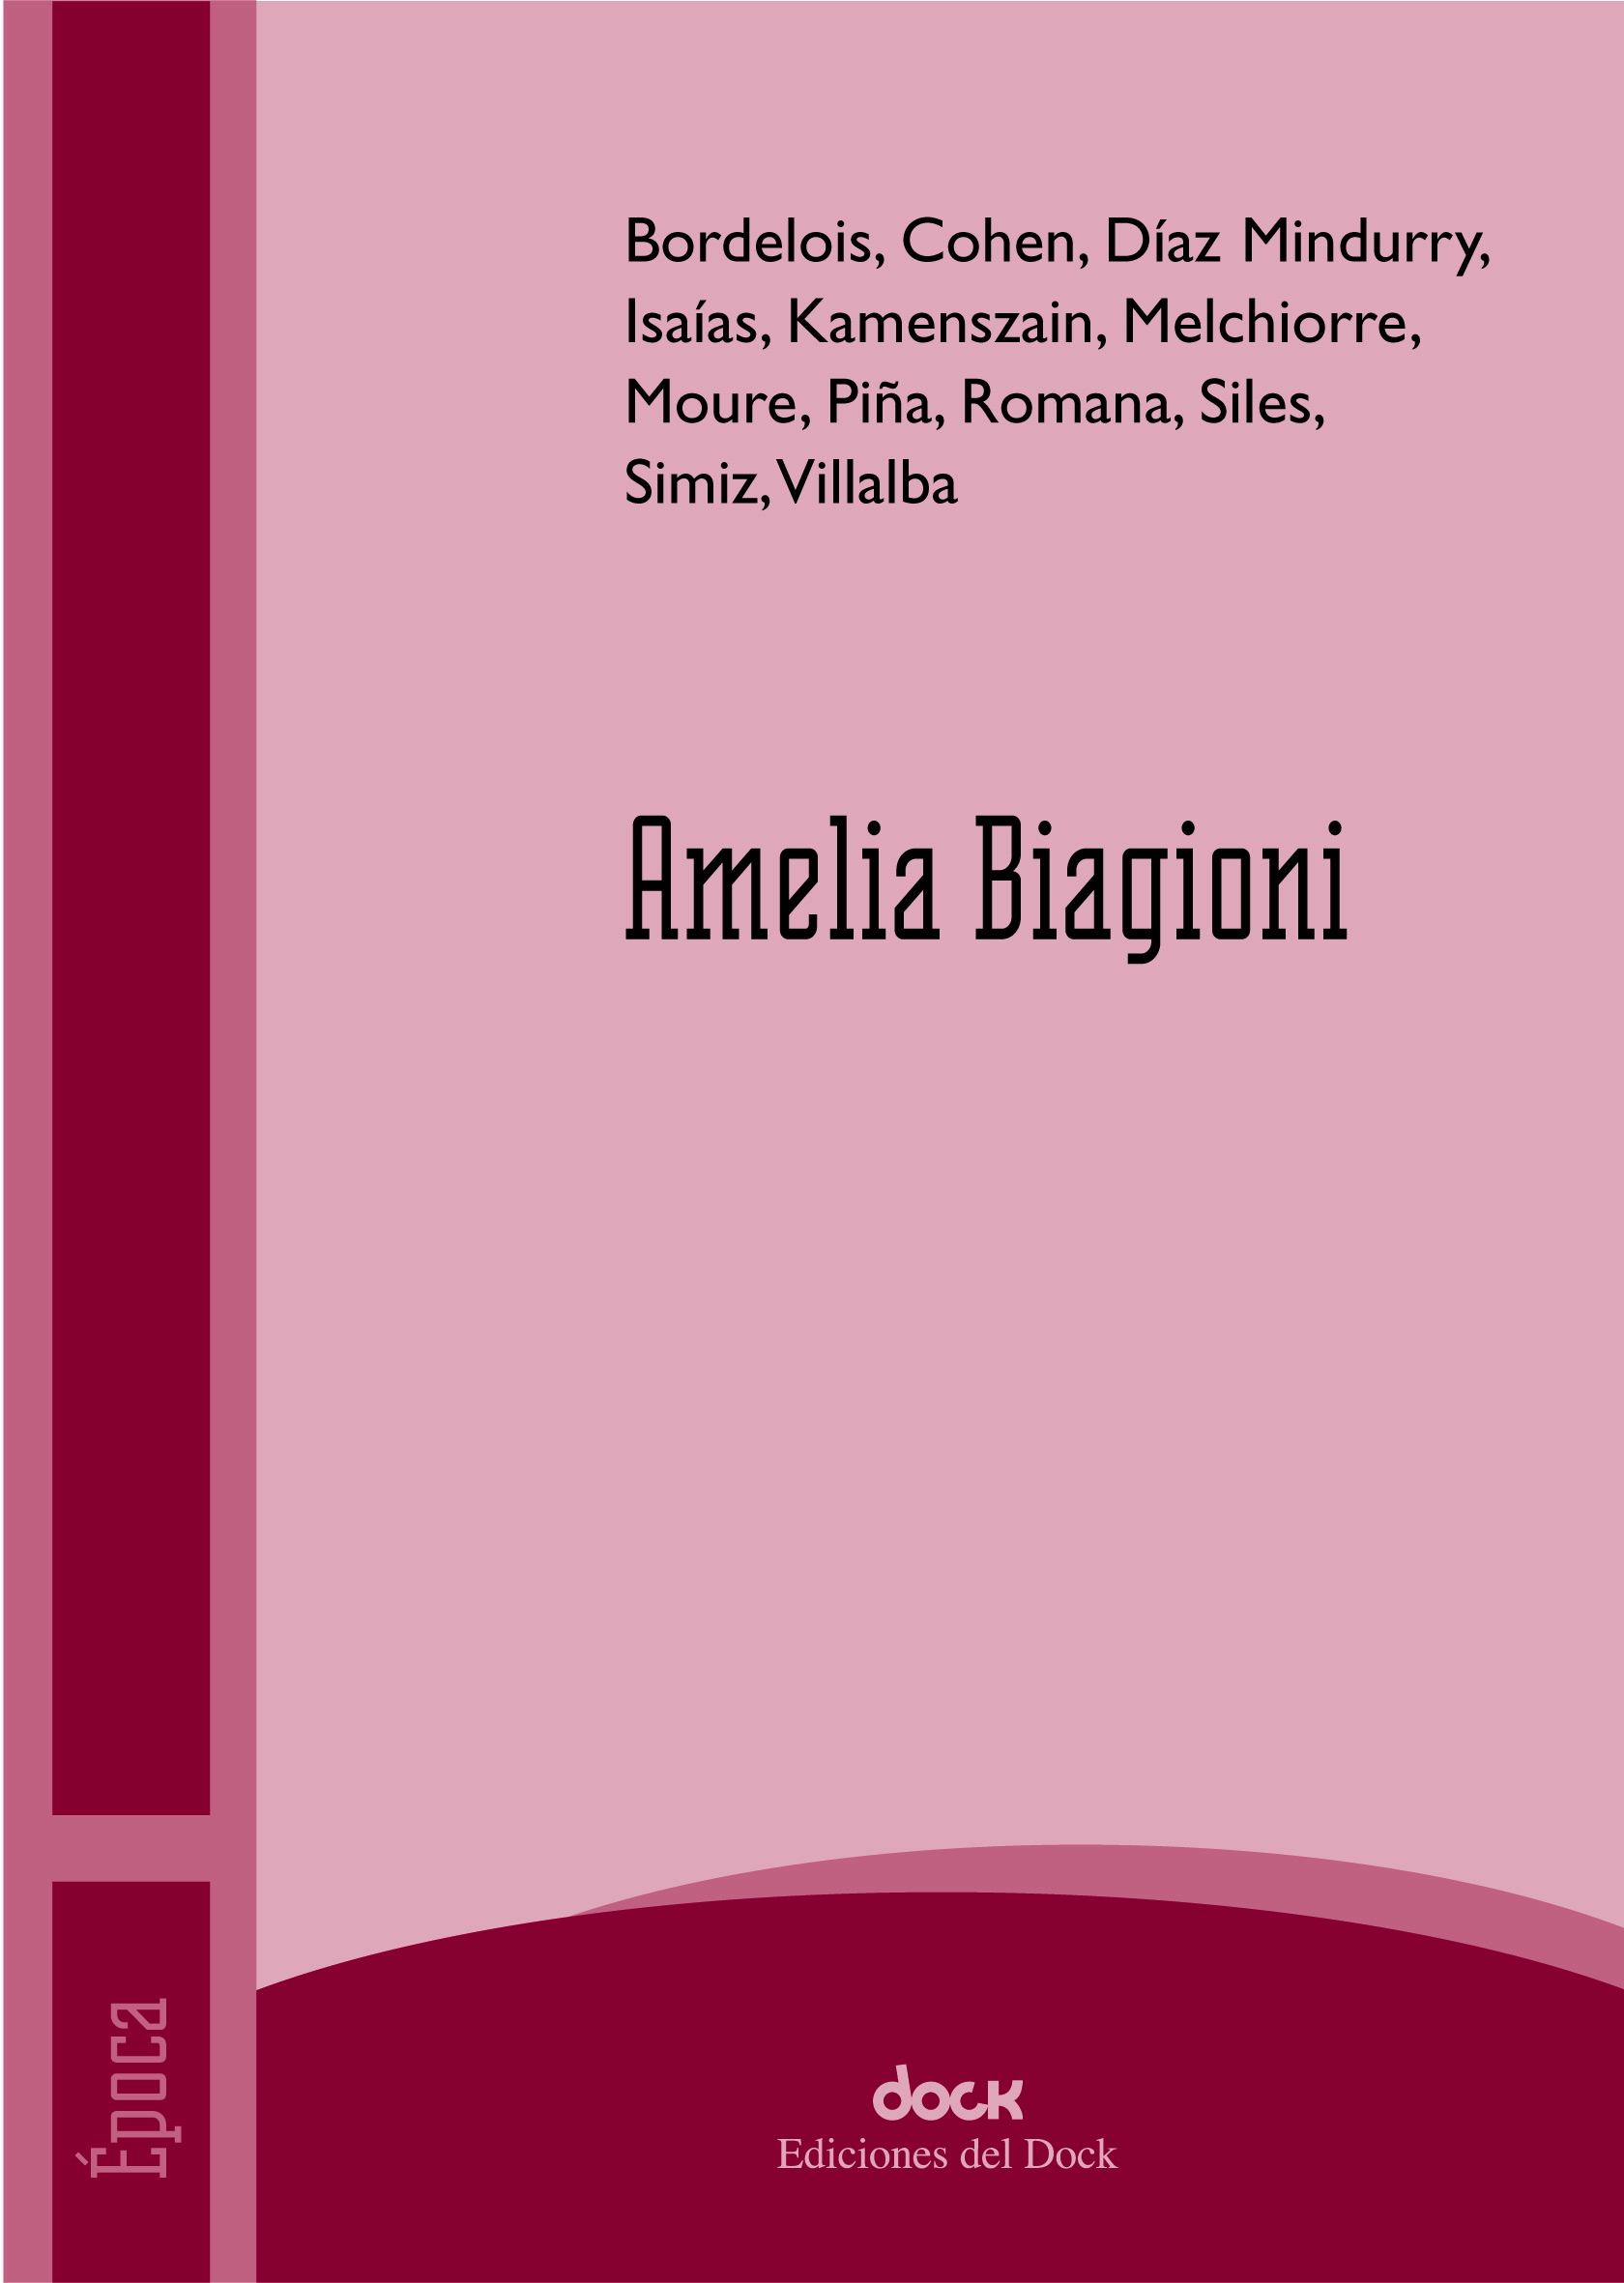 Amelia Biagioni